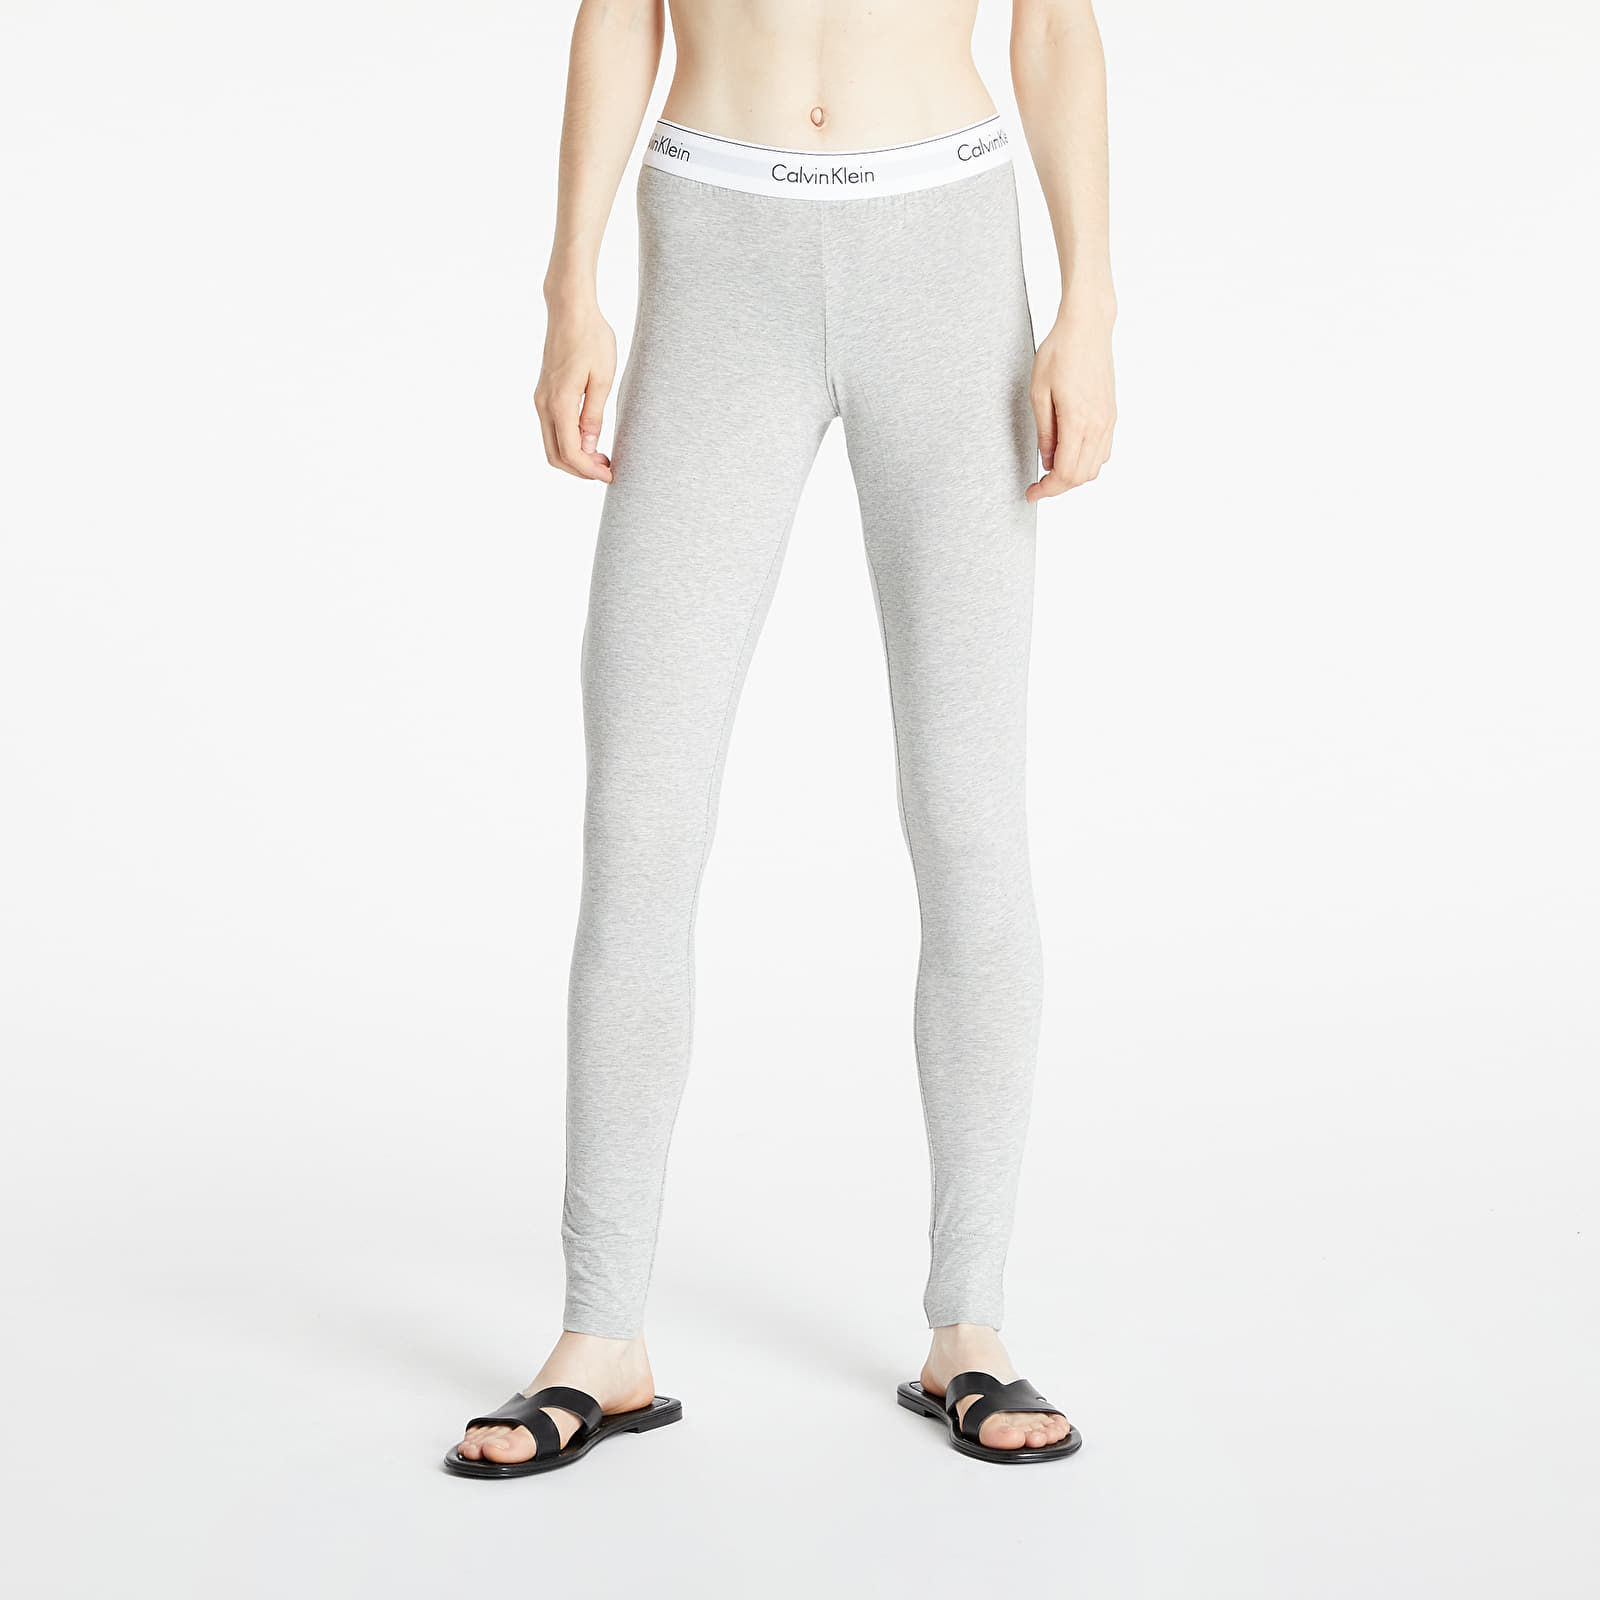 Calvin Klein - legging pant grey